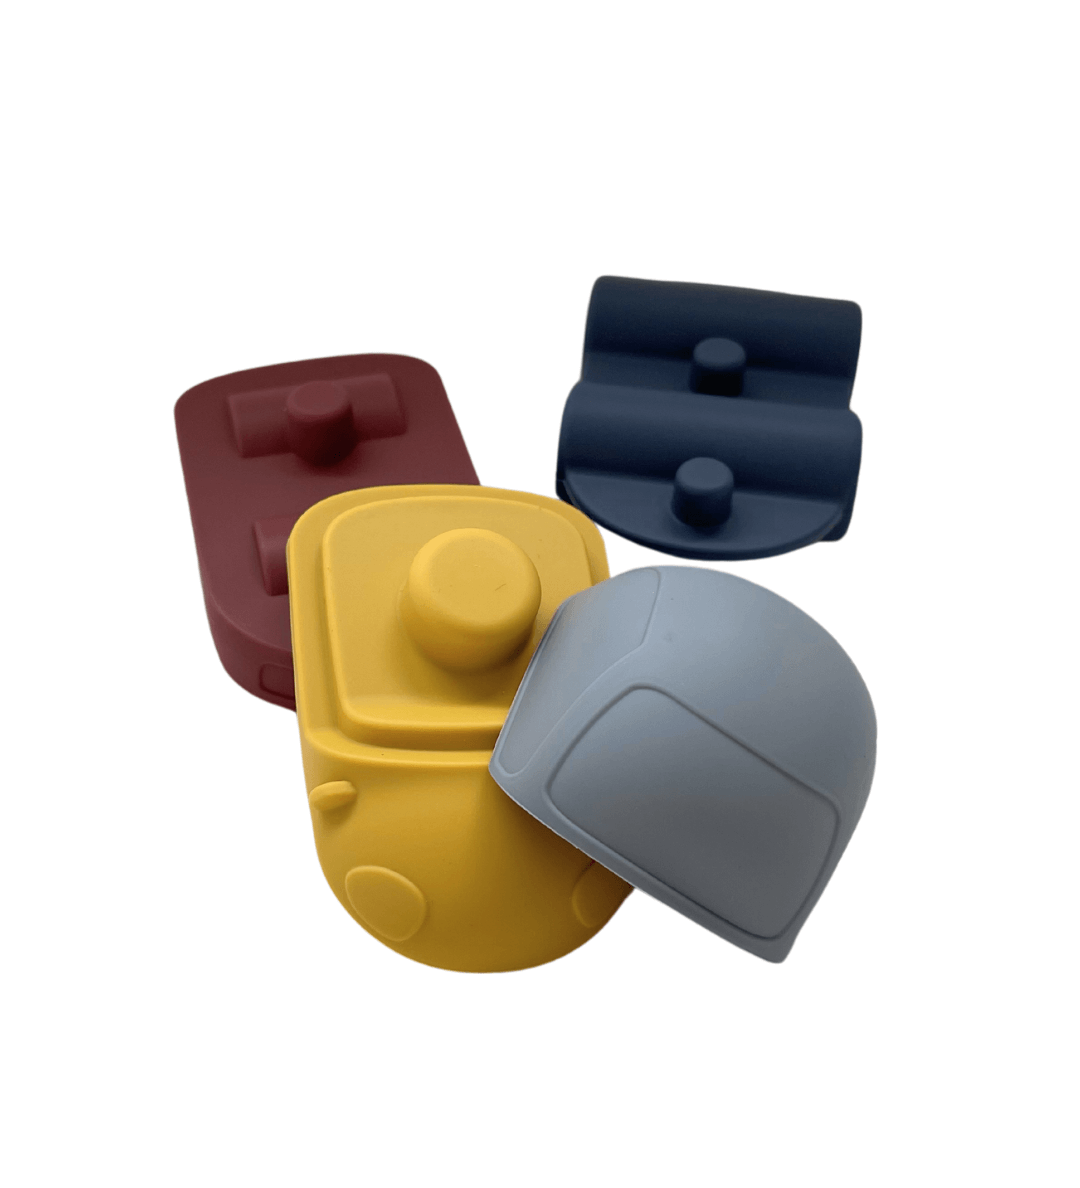 Detail van afneembare onderdelen van siliconen speelset - elk met uniek symbool voor vorm- en kleurenspel.